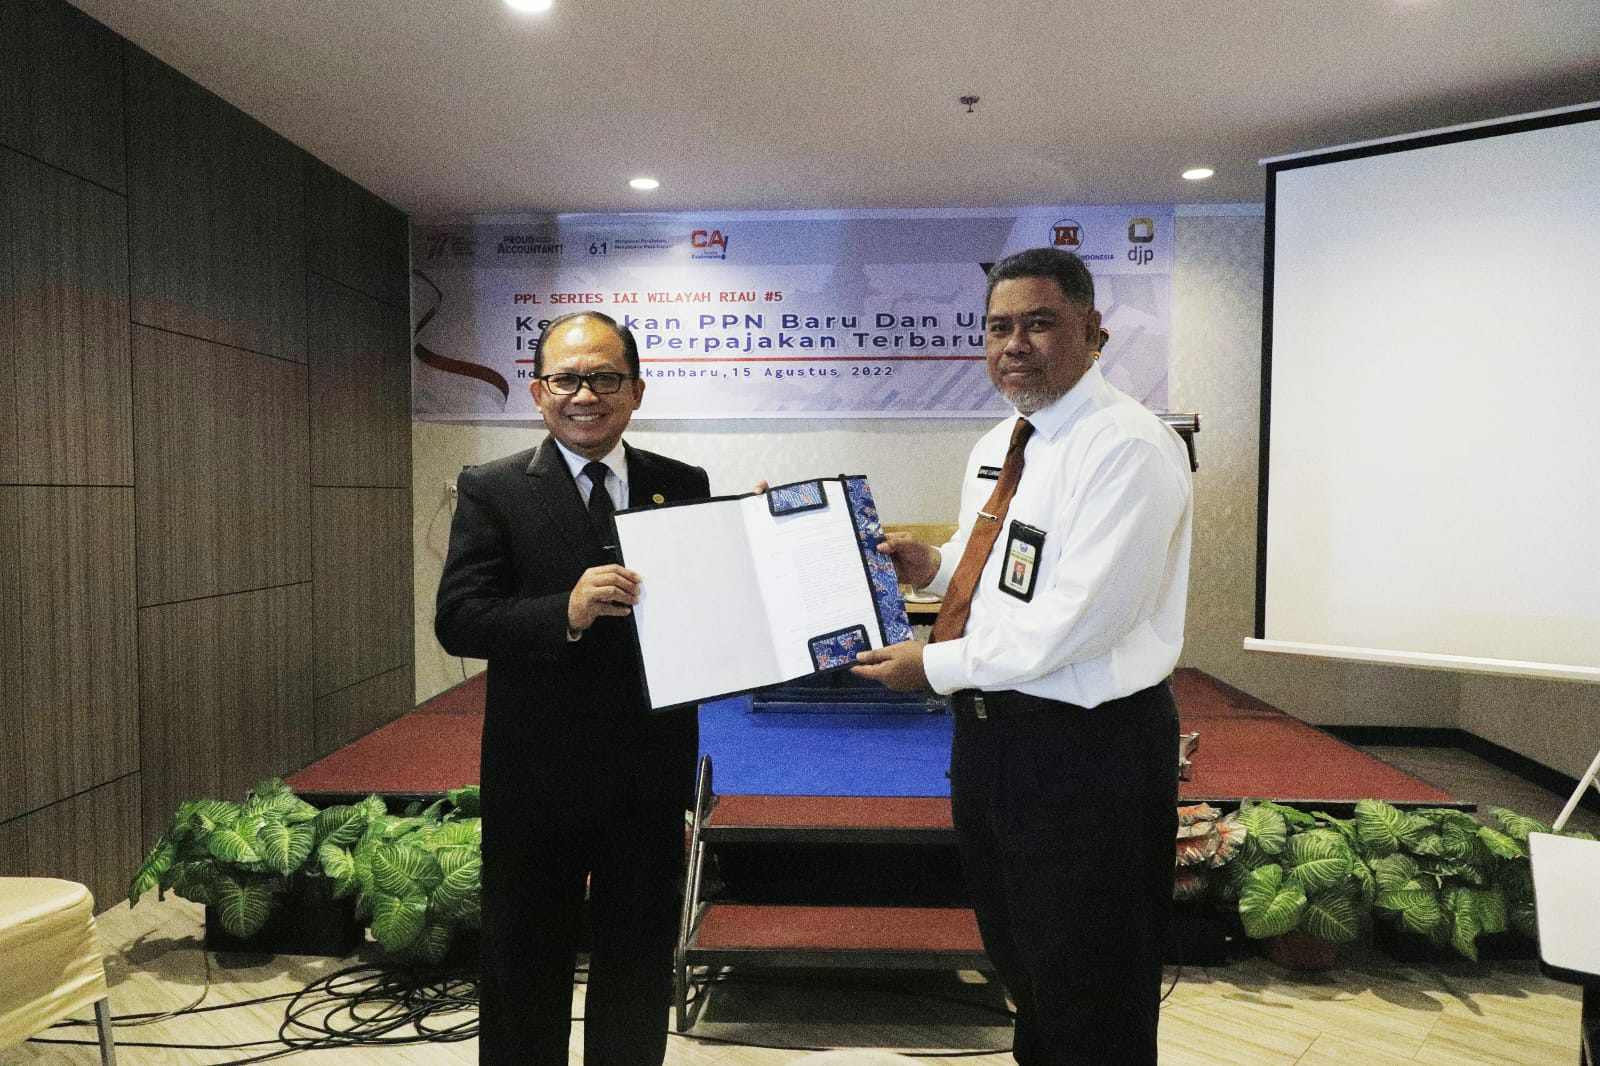 Kukuhkan Ketua IAI Wilayah Riau sebagai Relawan Pajak, Kepala DJP Sebut Peran Akuntan Sangat Penting